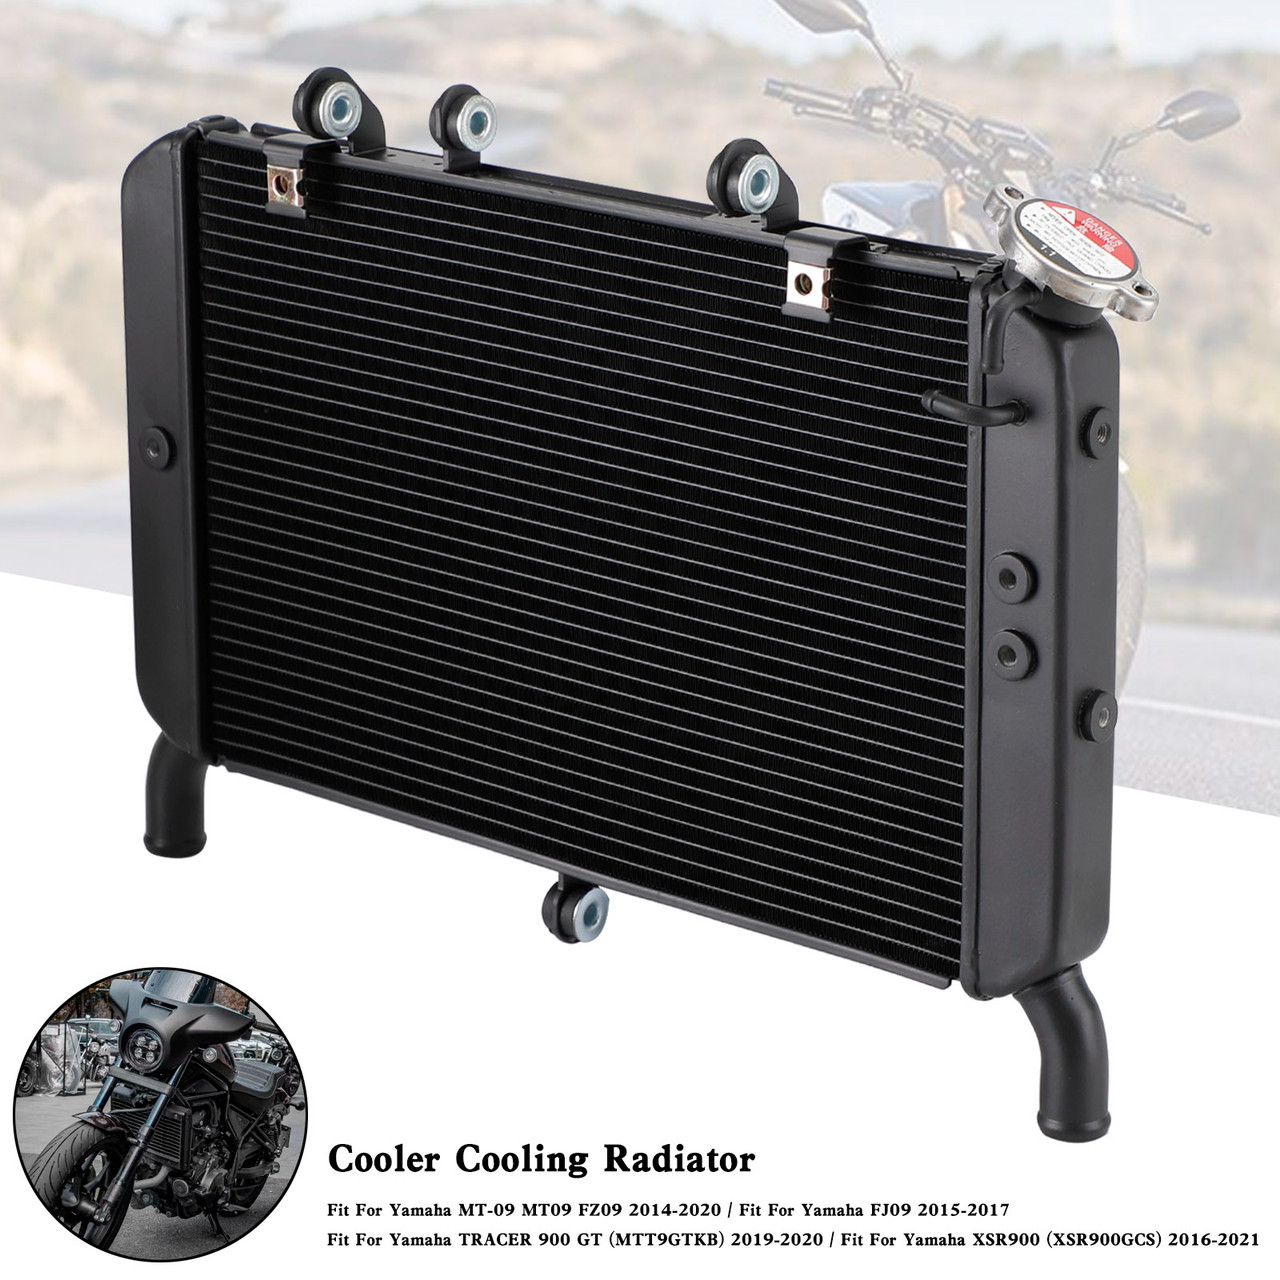 16-21 Yamaha XSR900 (XSR900GCS) Cooler Cooling Radiator